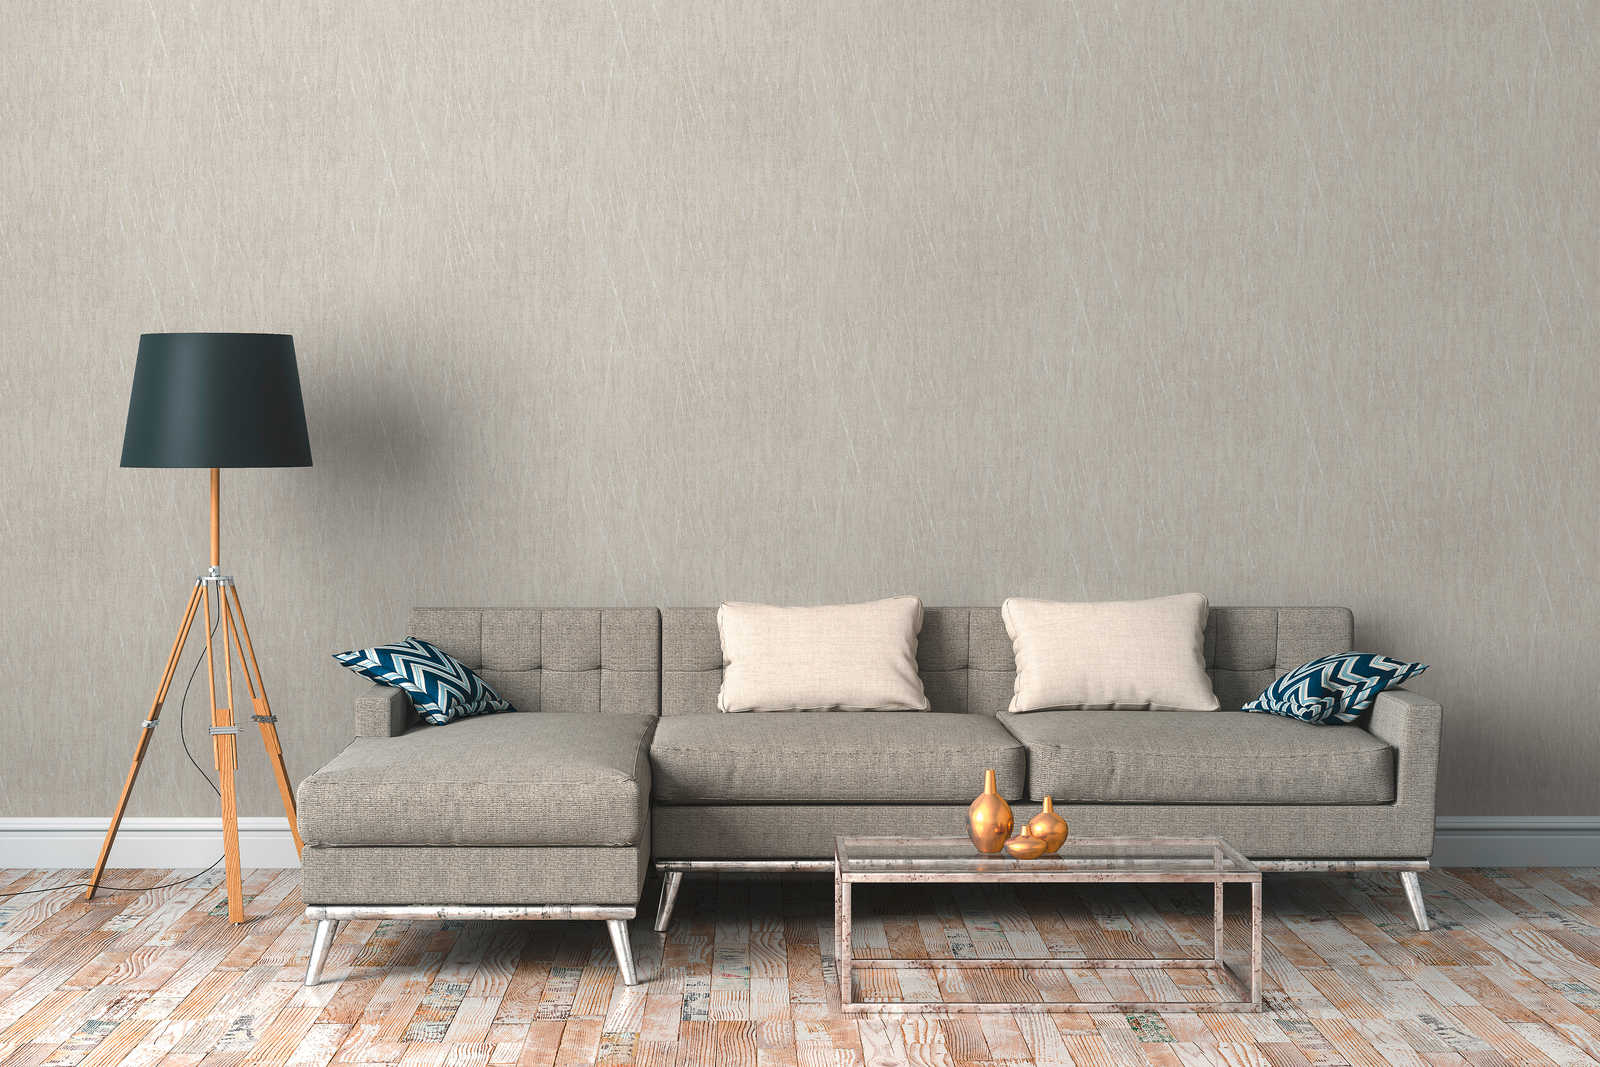             Scandinavisch behang met metallic design - grijs, metallic
        